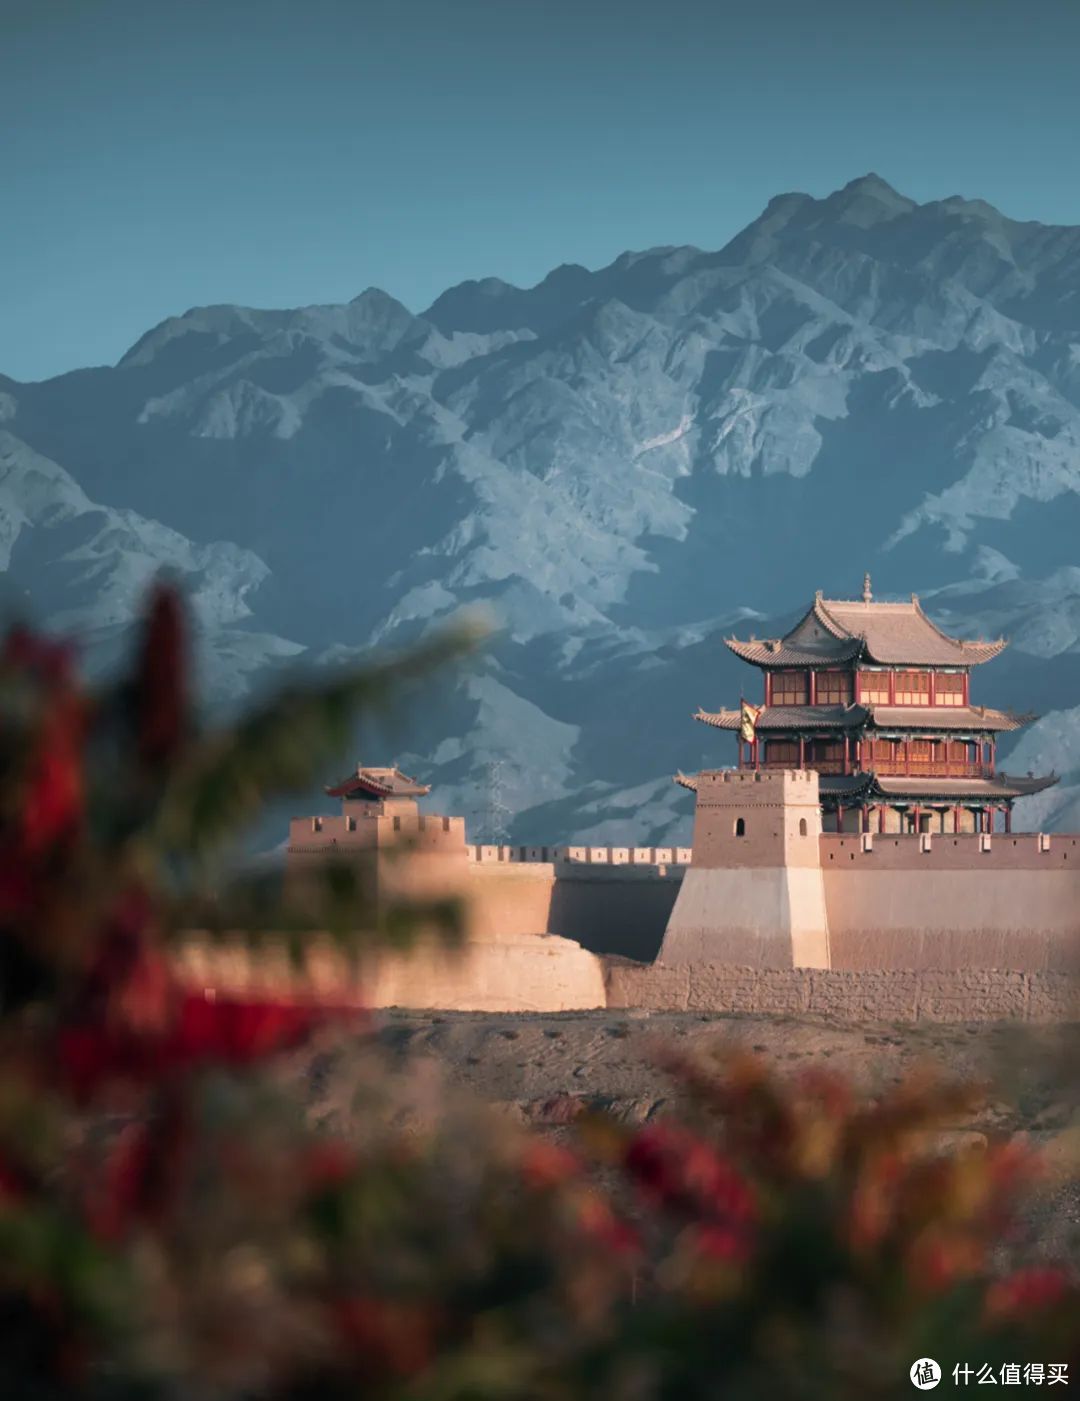 张张壁纸！90后摄影师走遍中国，拍摄壮丽风景，每一张都让人惊艳！